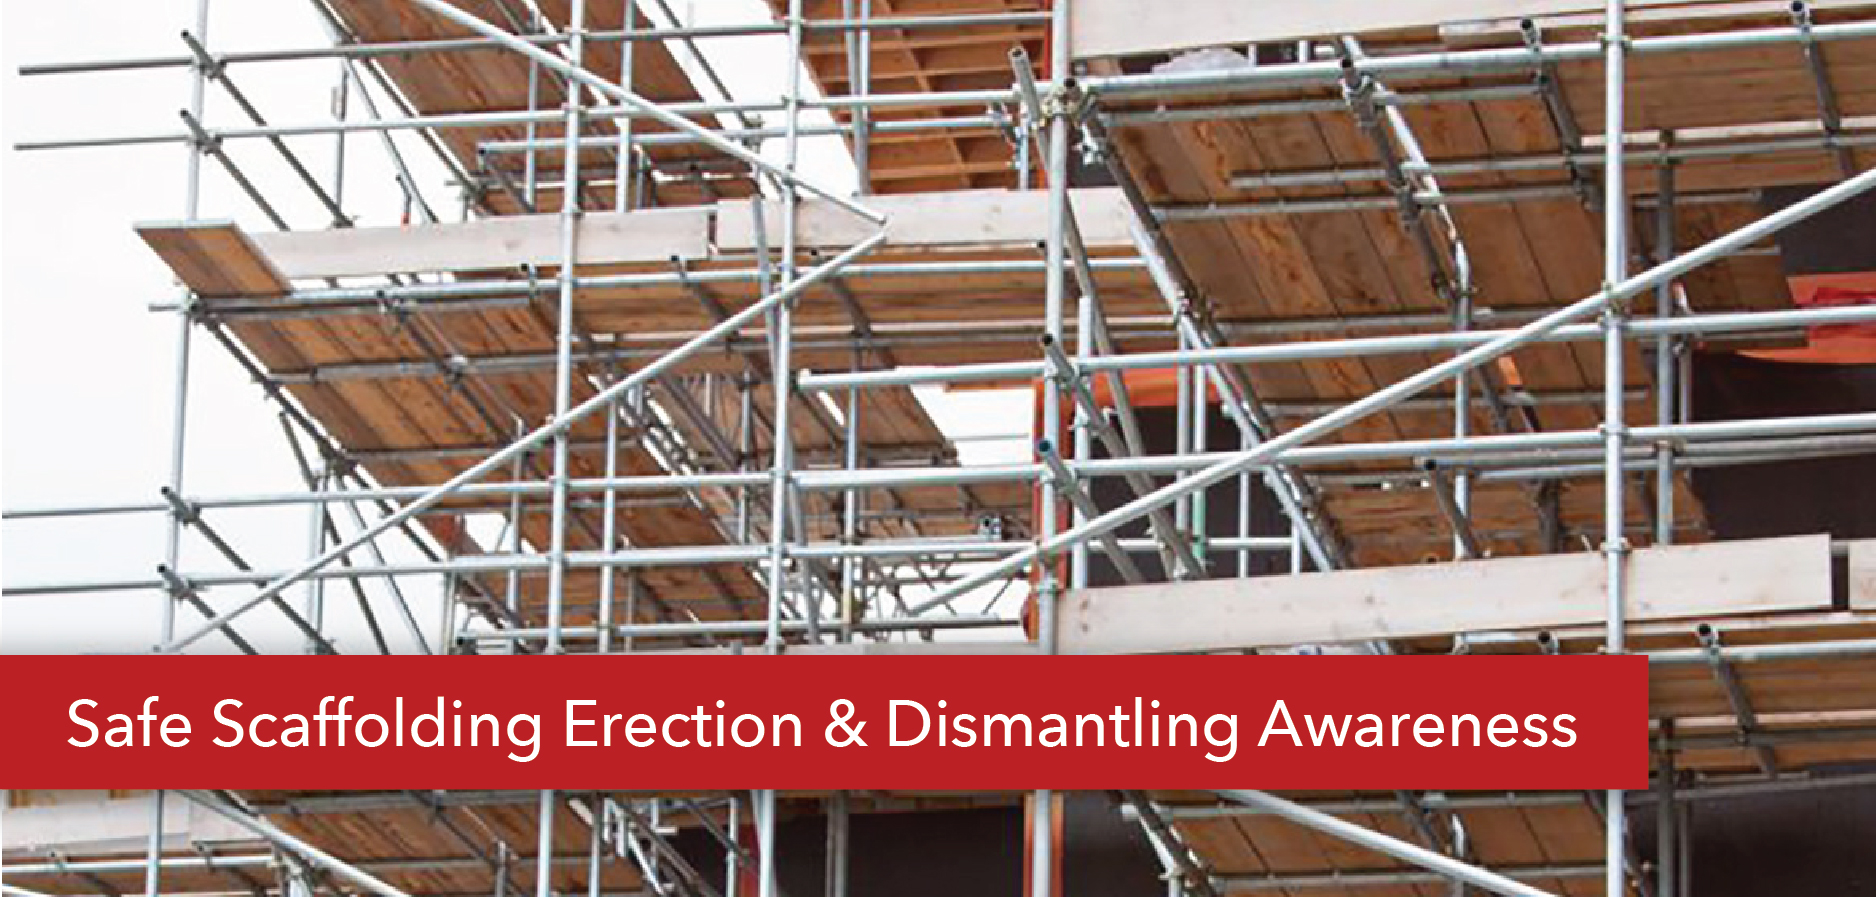 safe-scaffolding-erection-dismantling-awareness